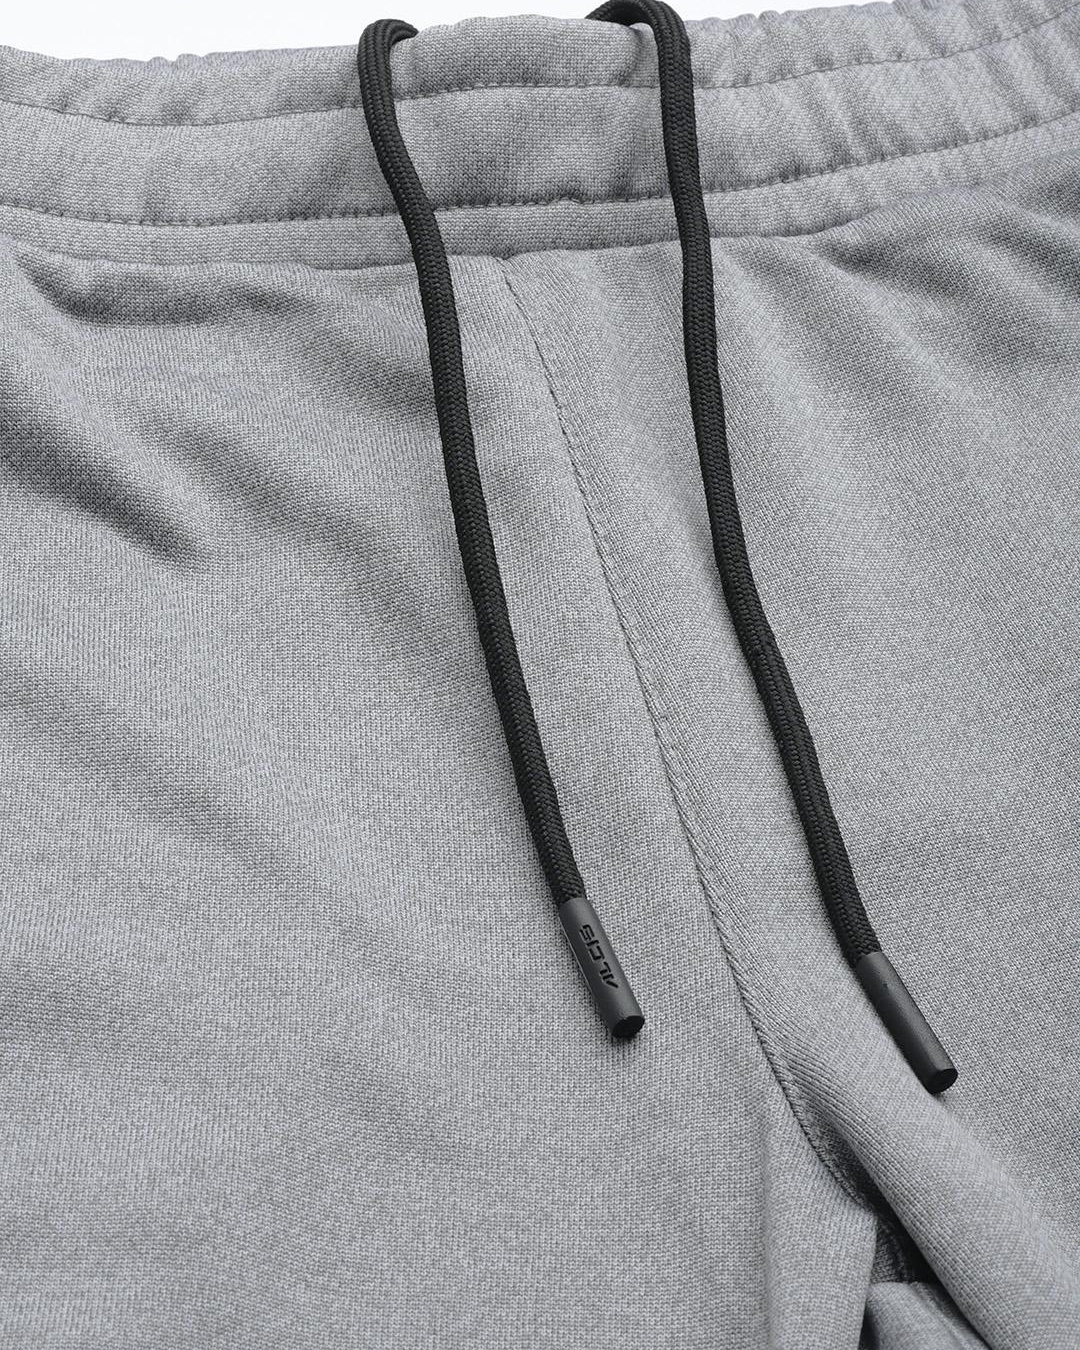 Buy Men's Grey Slim Fit Track Pants for Men Grey Online at Bewakoof